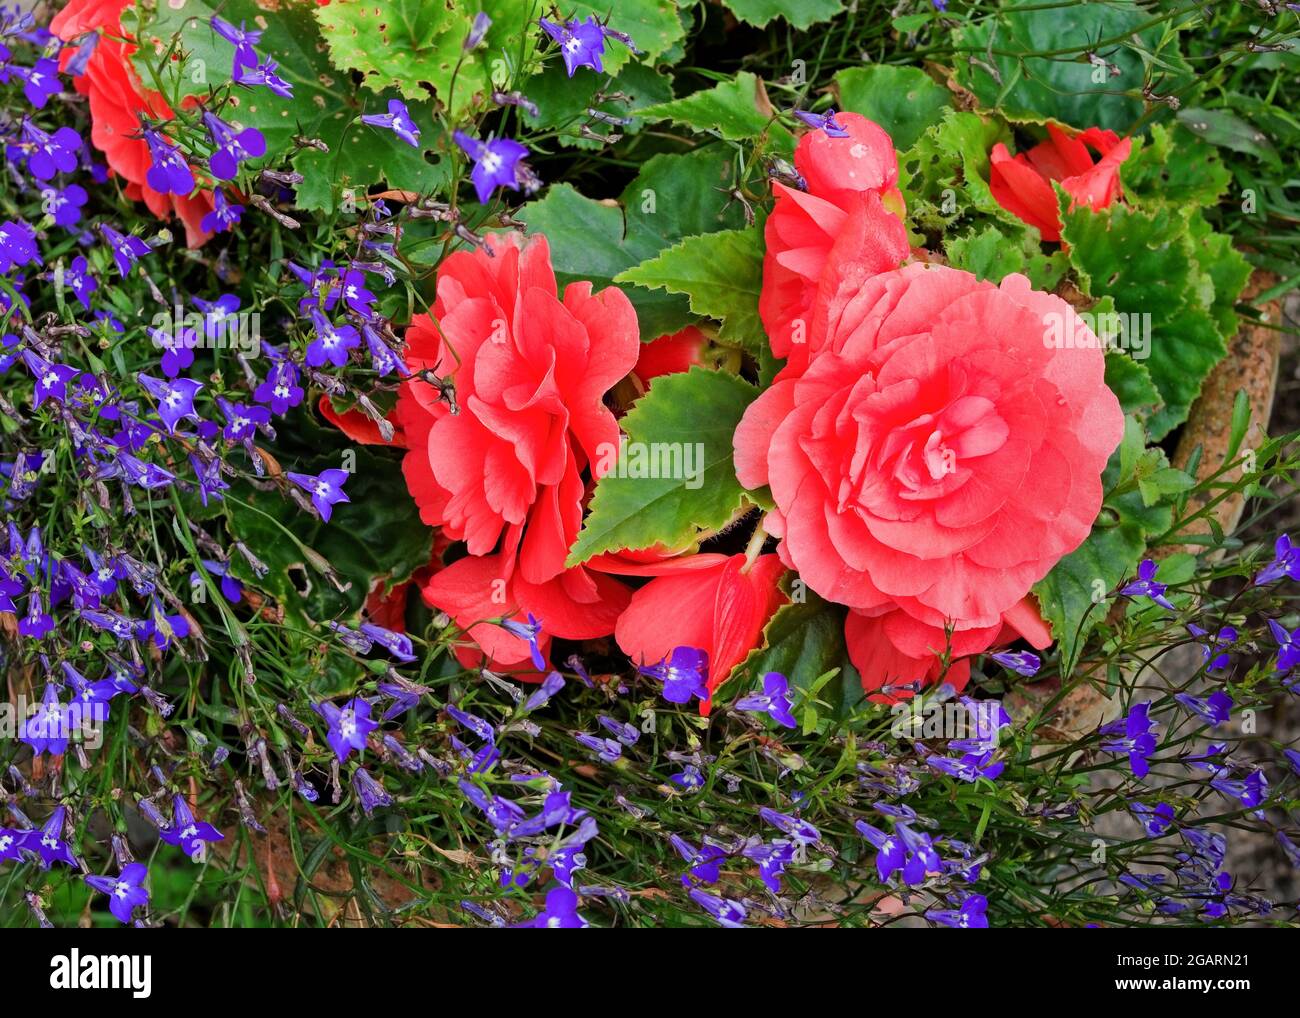 Fleurs de la fin de l'été fleurs de la double begonia rose profond et lobélie bleu/pourpre en terre cuite pot, août Angleterre Royaume-Uni Banque D'Images